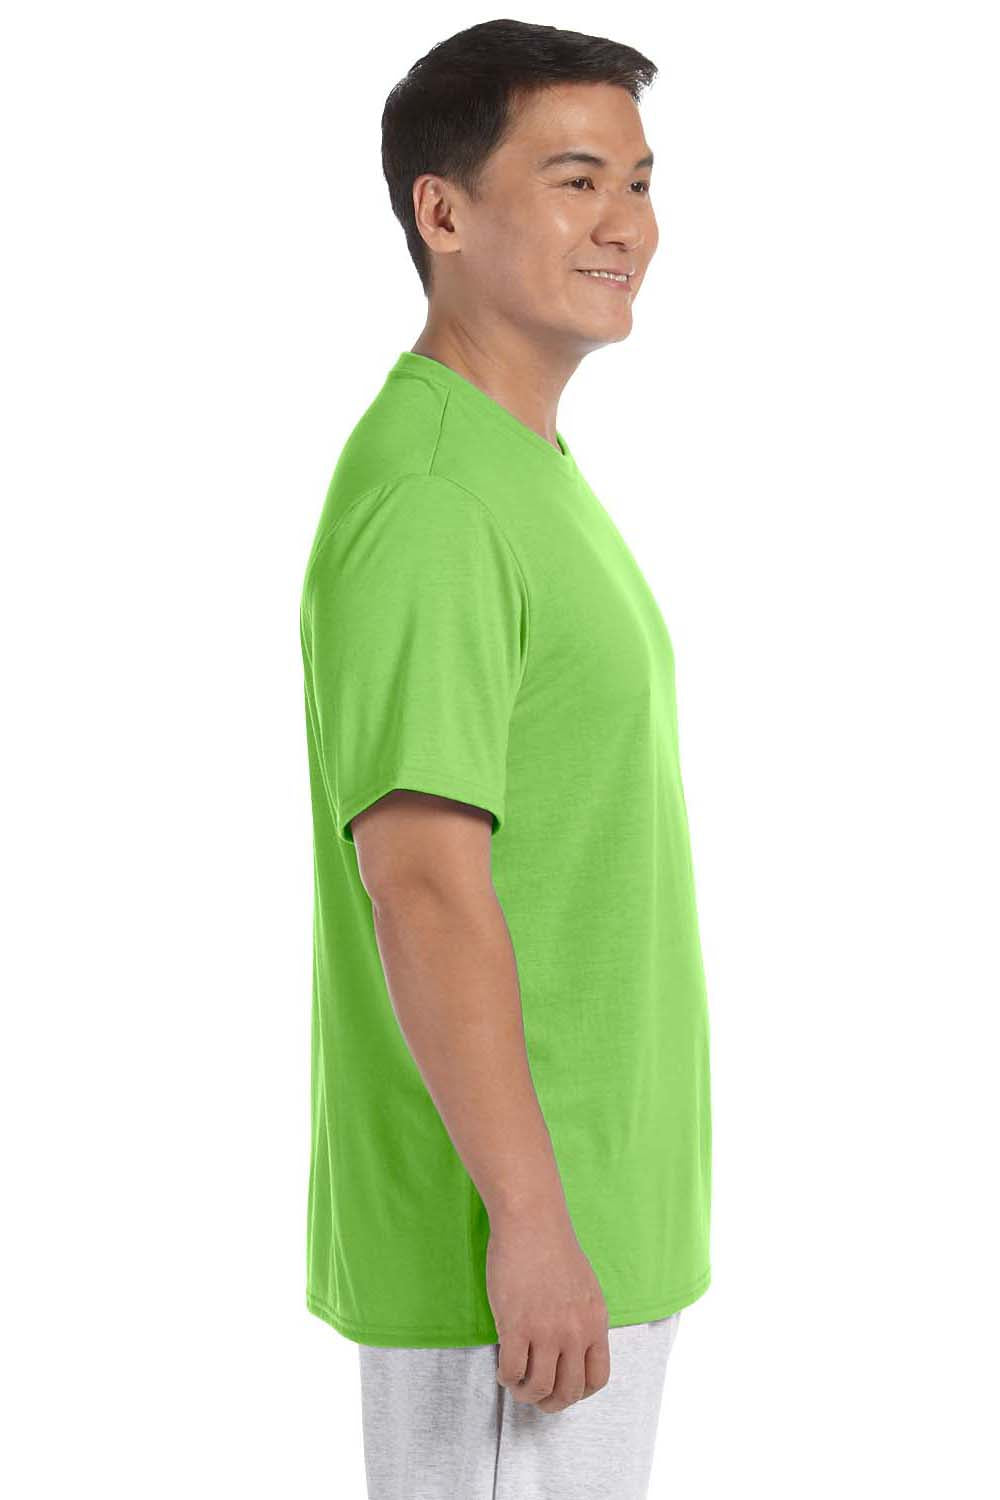 Gildan G420 Mens Performance Jersey Moisture Wicking Short Sleeve Crewneck T-Shirt Lime Green Side